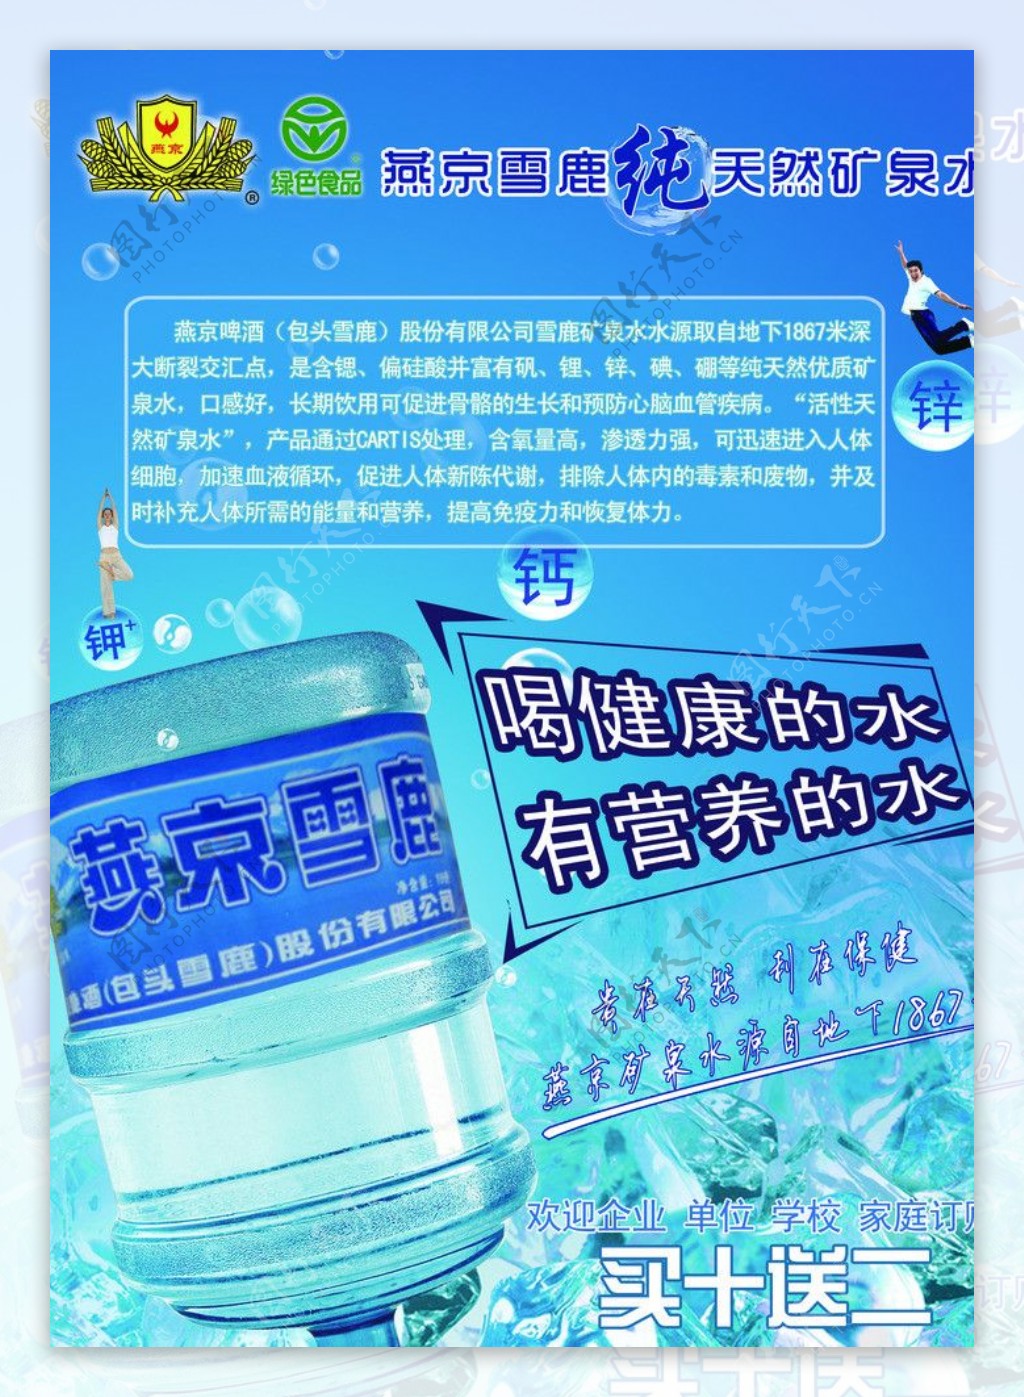 燕京矿泉水广告图片